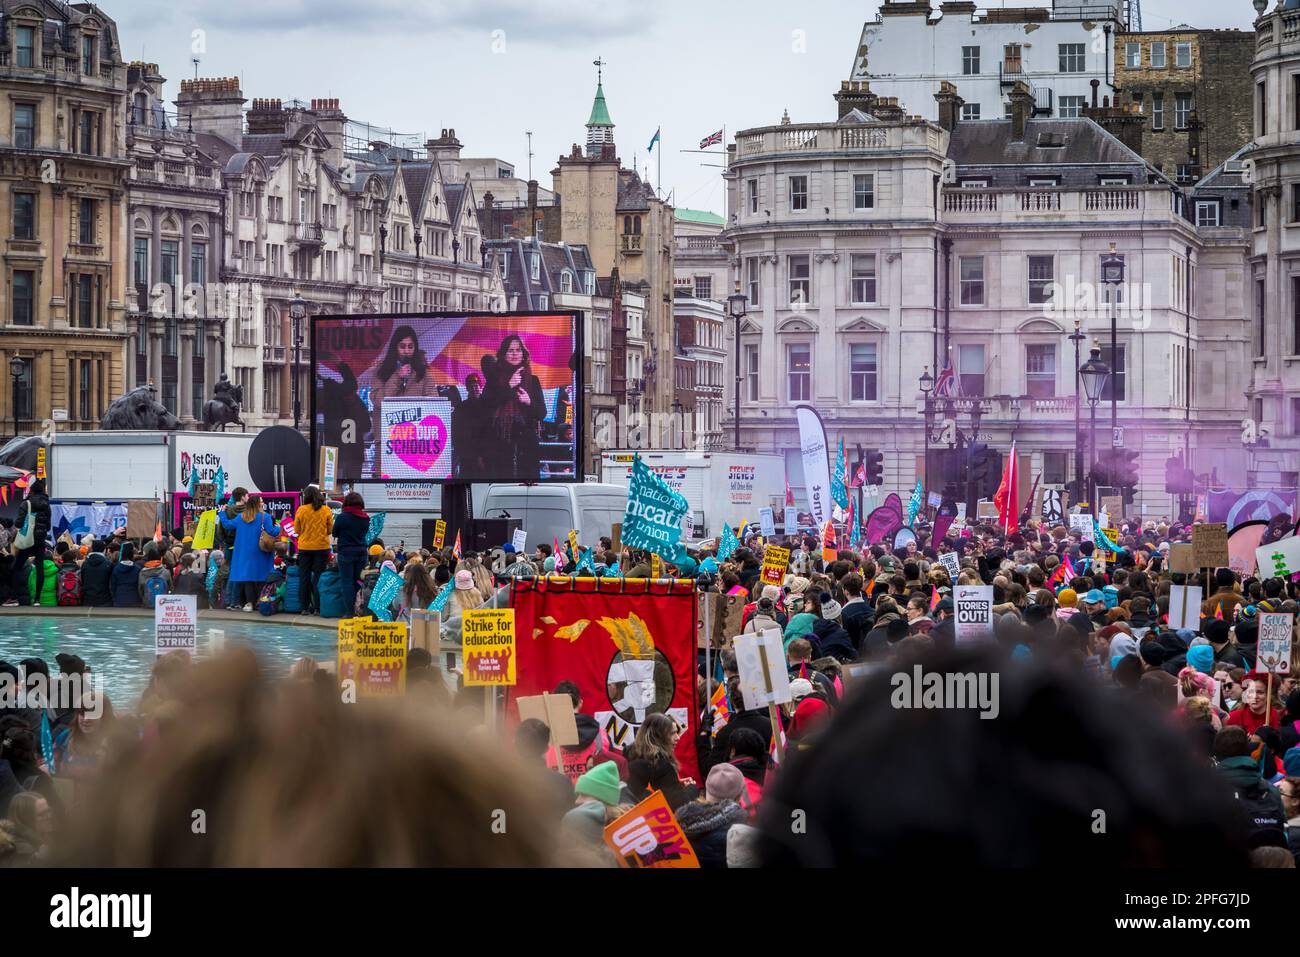 Los maestros se declaran en huelga y se manifiestan por un salario justo en Trafalgar Square, Londres, Reino Unido, 15/03/2023 Foto de stock